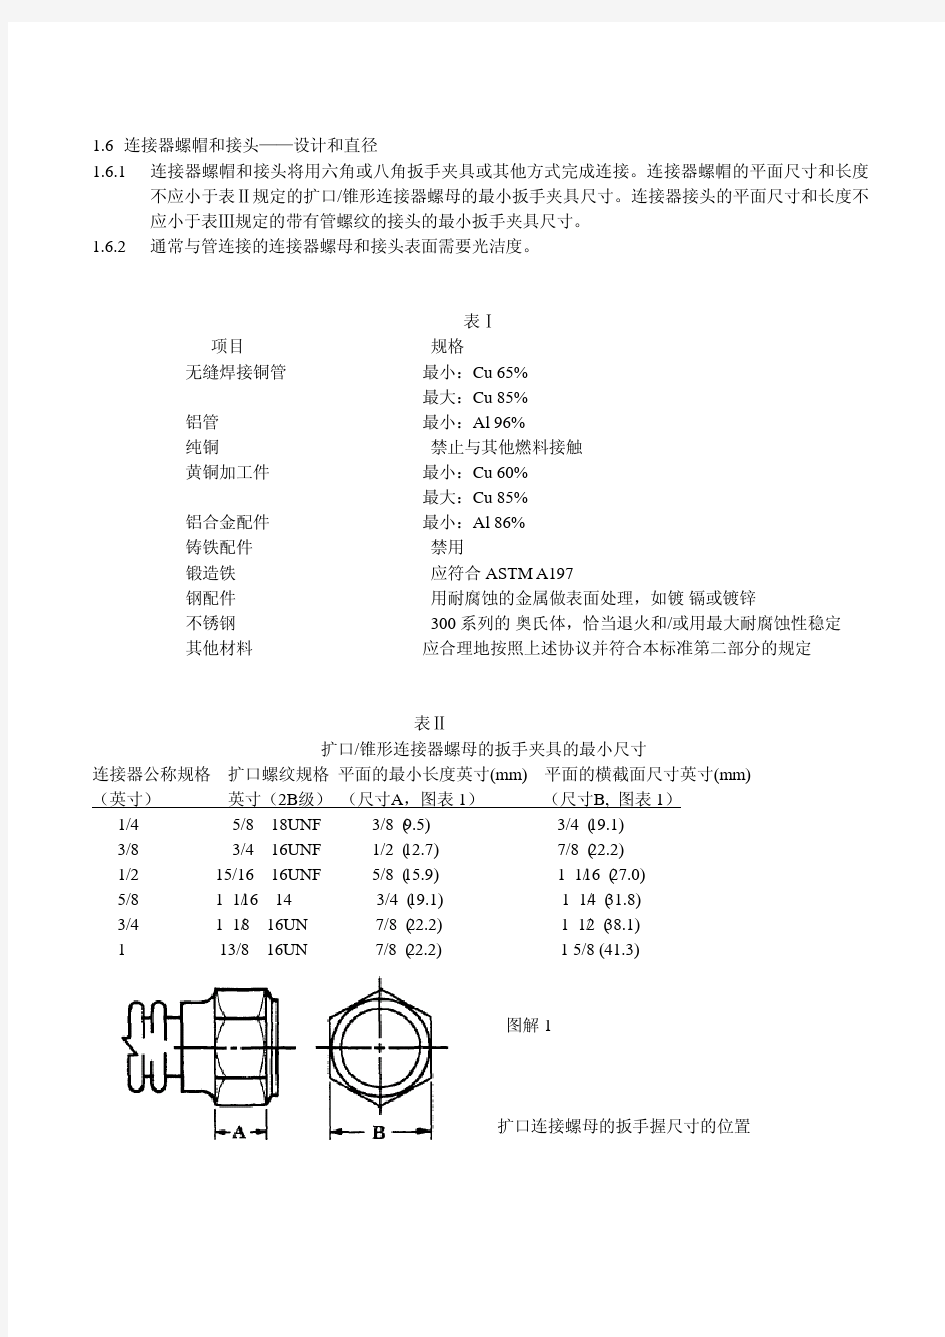 ANSI Z21.24 CSA 6.10-2001燃气器具连接器标准(中文)